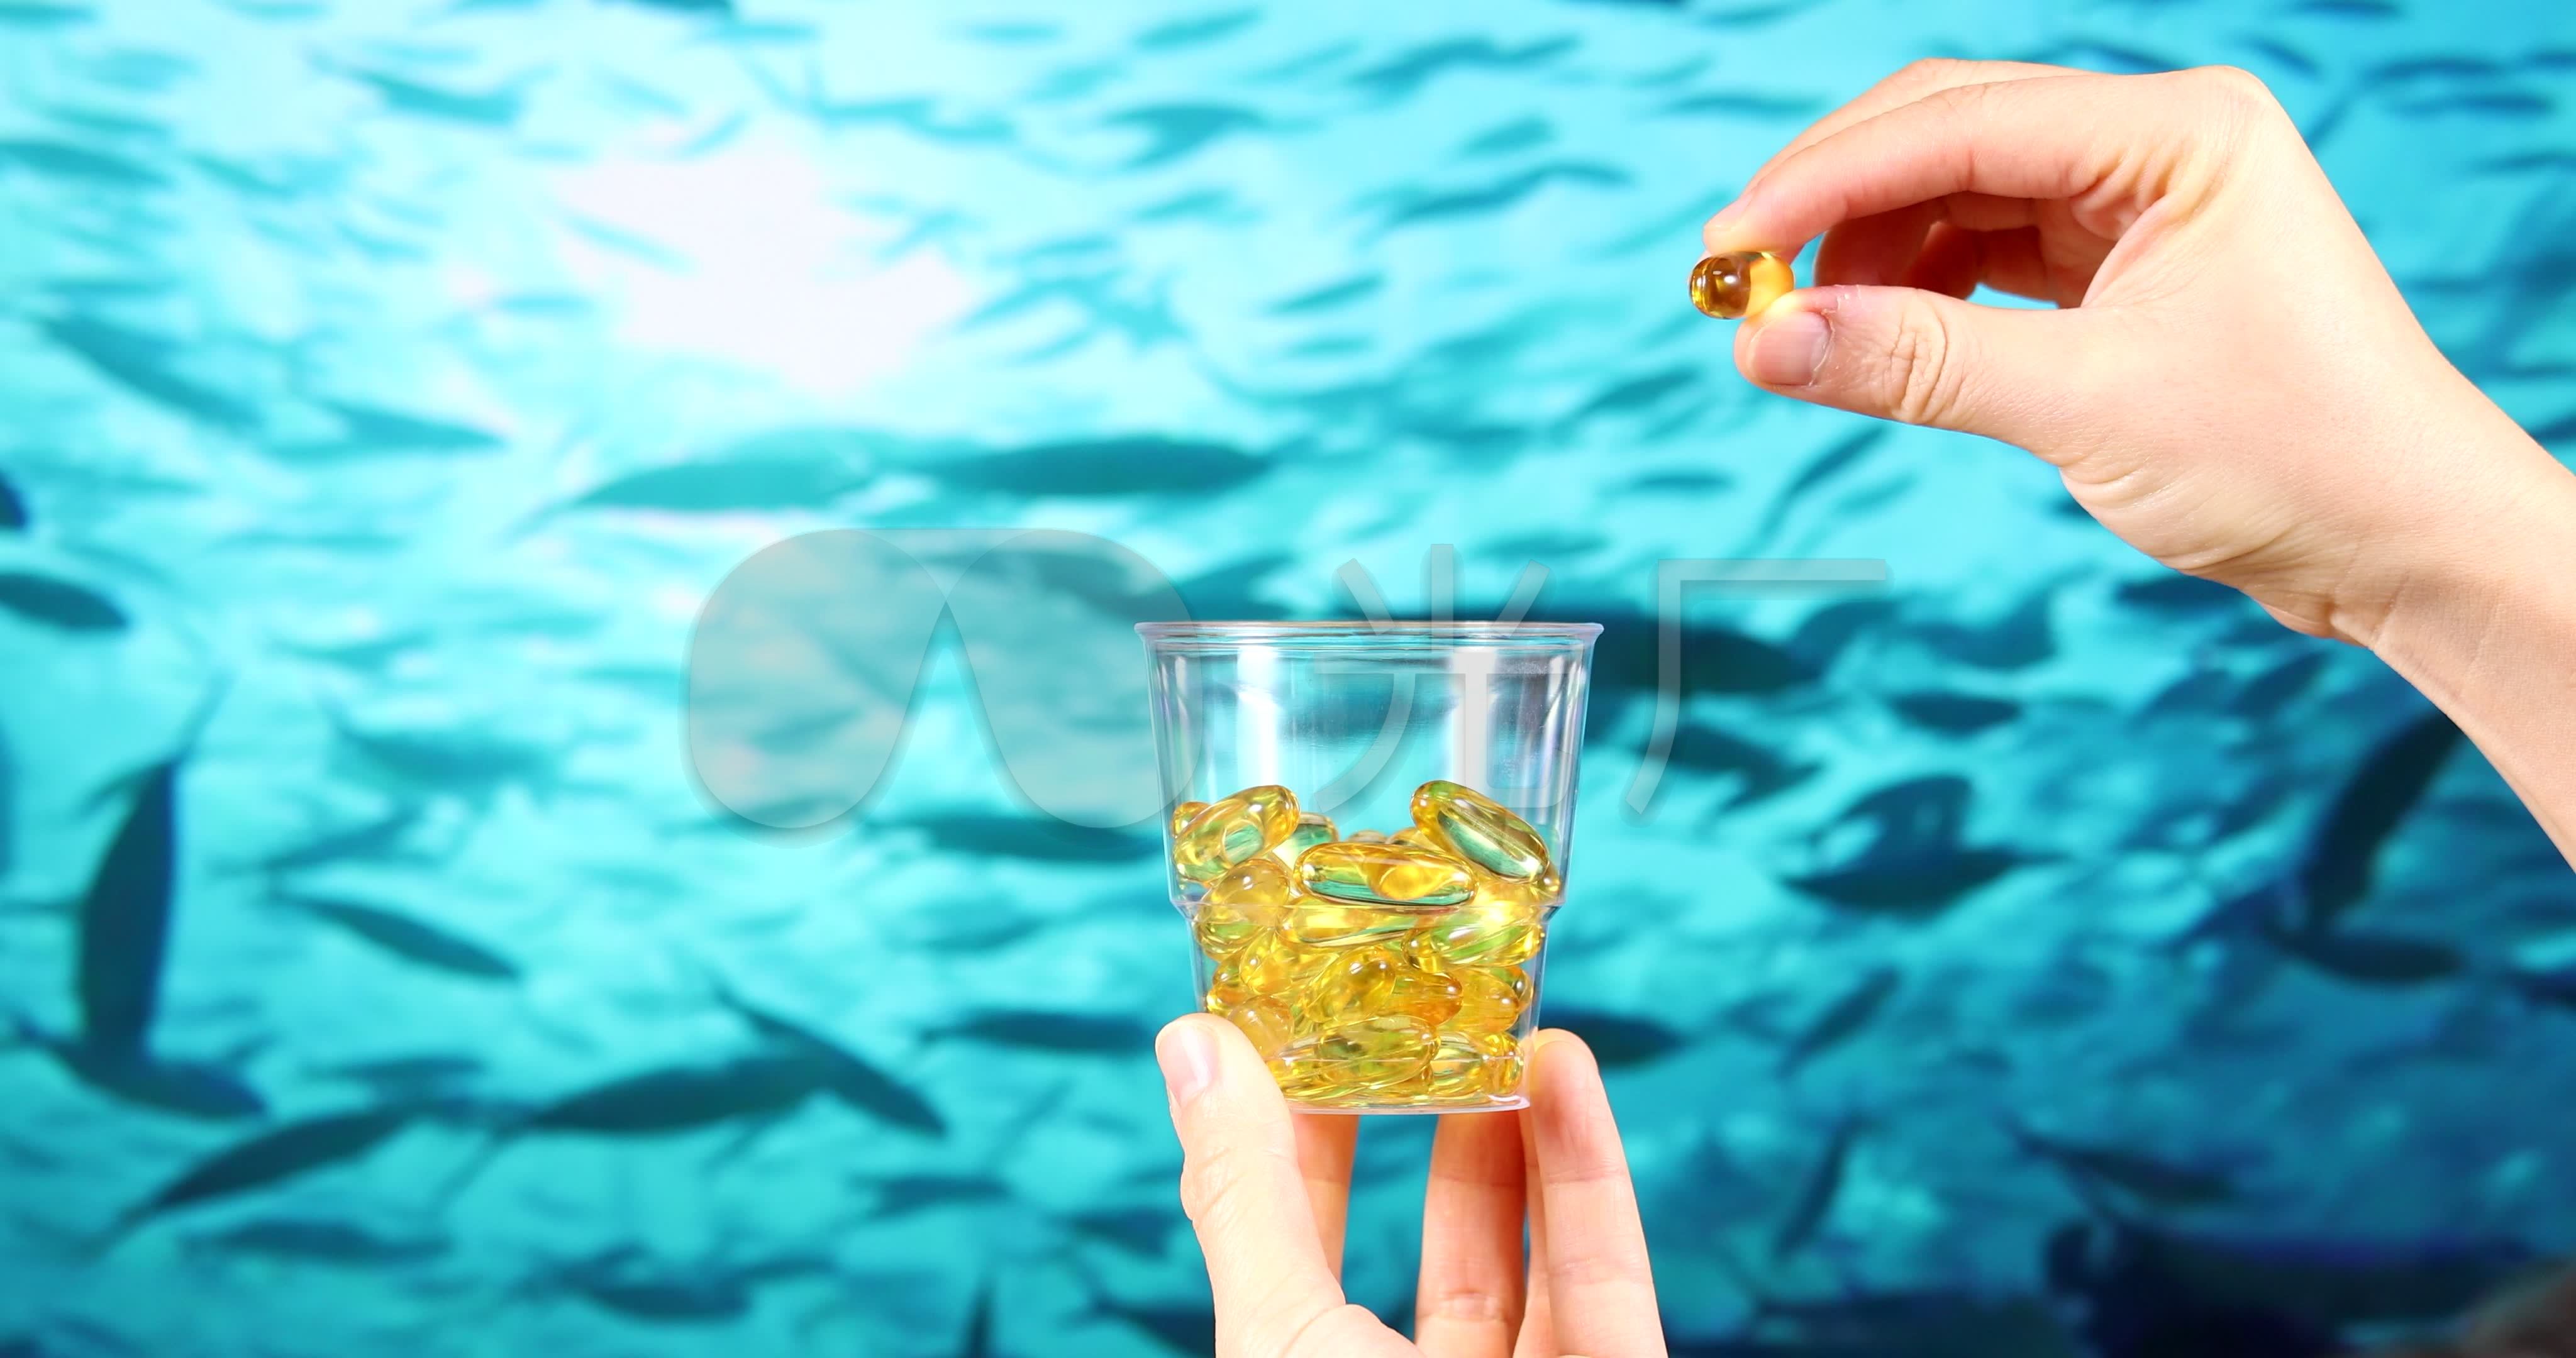 魚油食品新世紀！即日起放寬食品原料中魚油使用限制 -台美檢驗